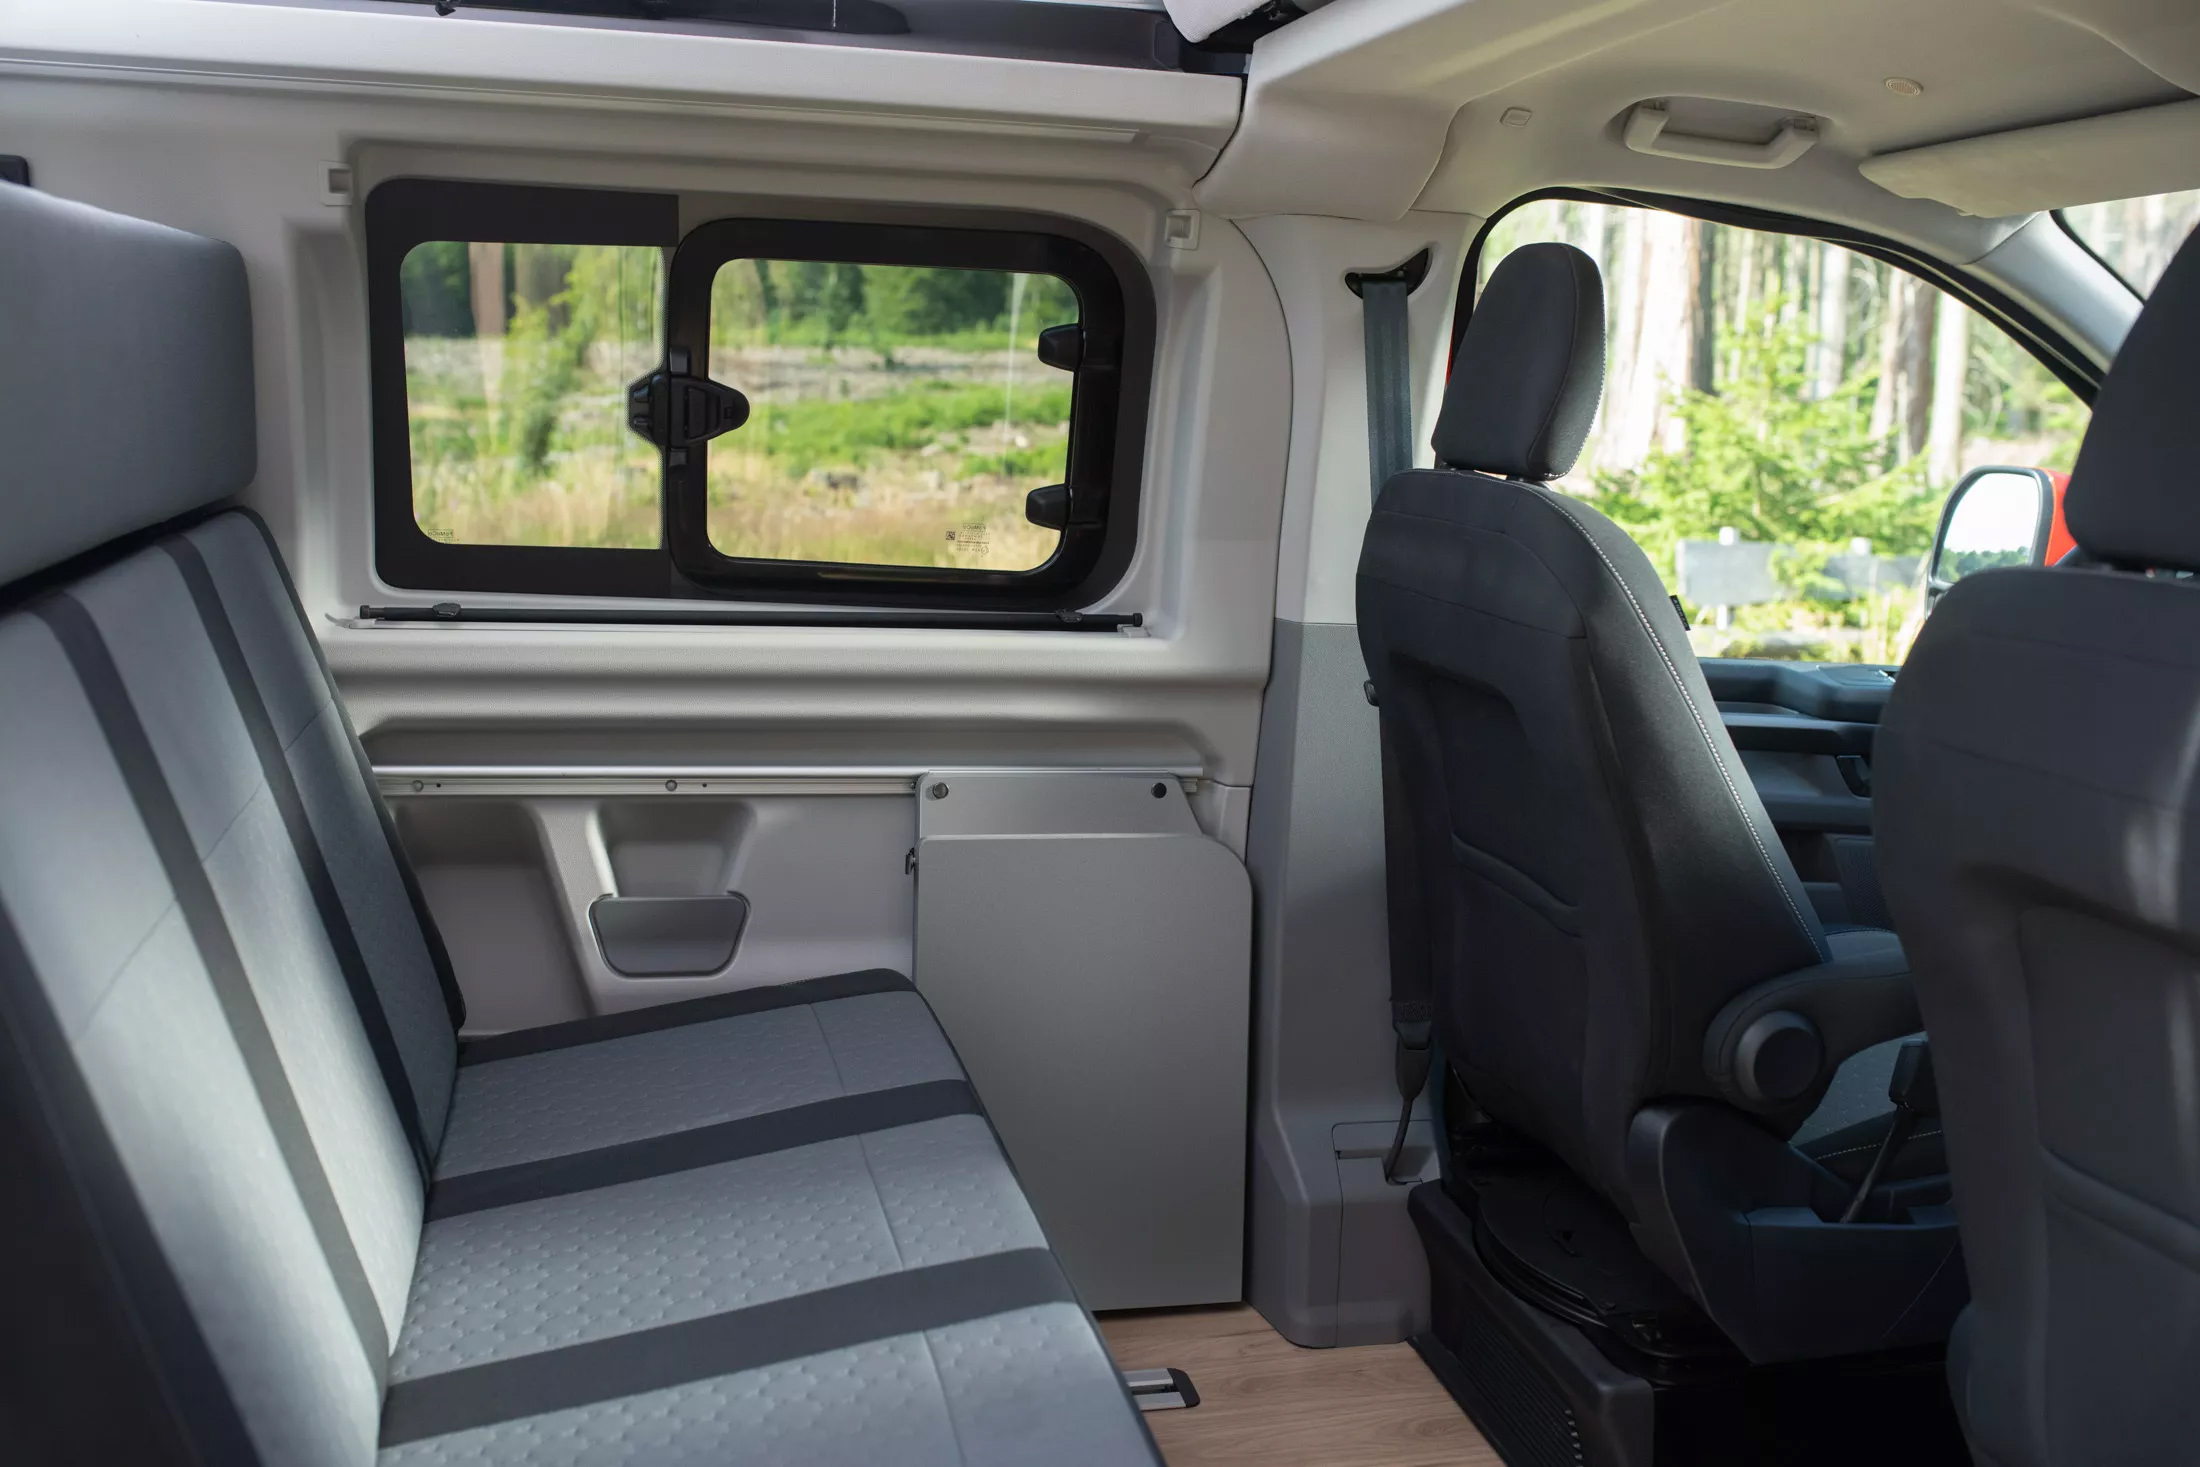 Представлен обновленный Ford Transit, выполненный в стилистике пикапа Ranger: фото и характеристики